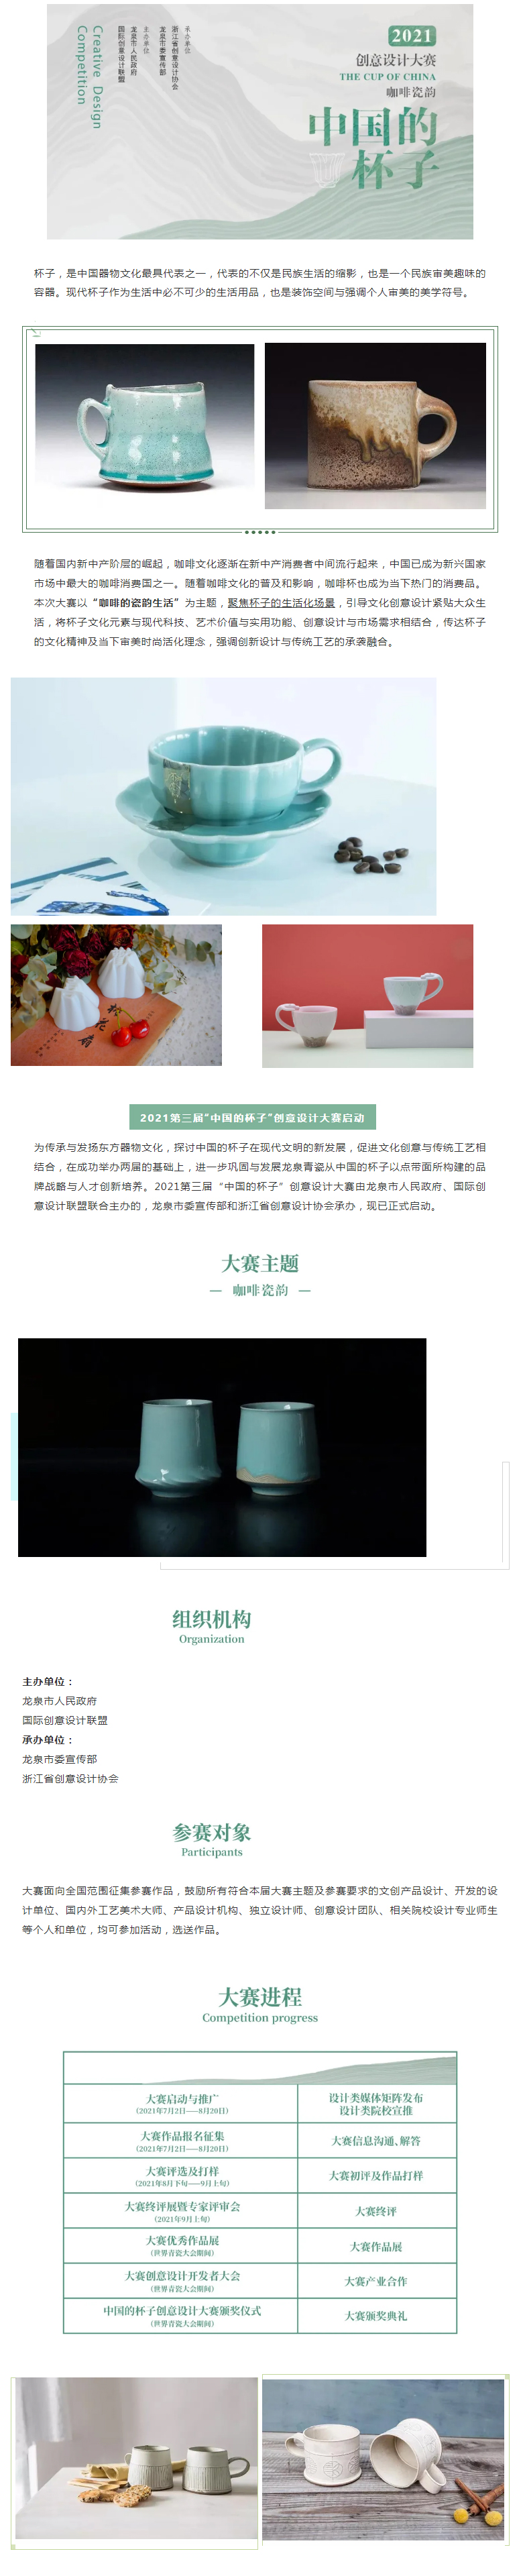 111三届中国的杯子创意设计大赛.jpg